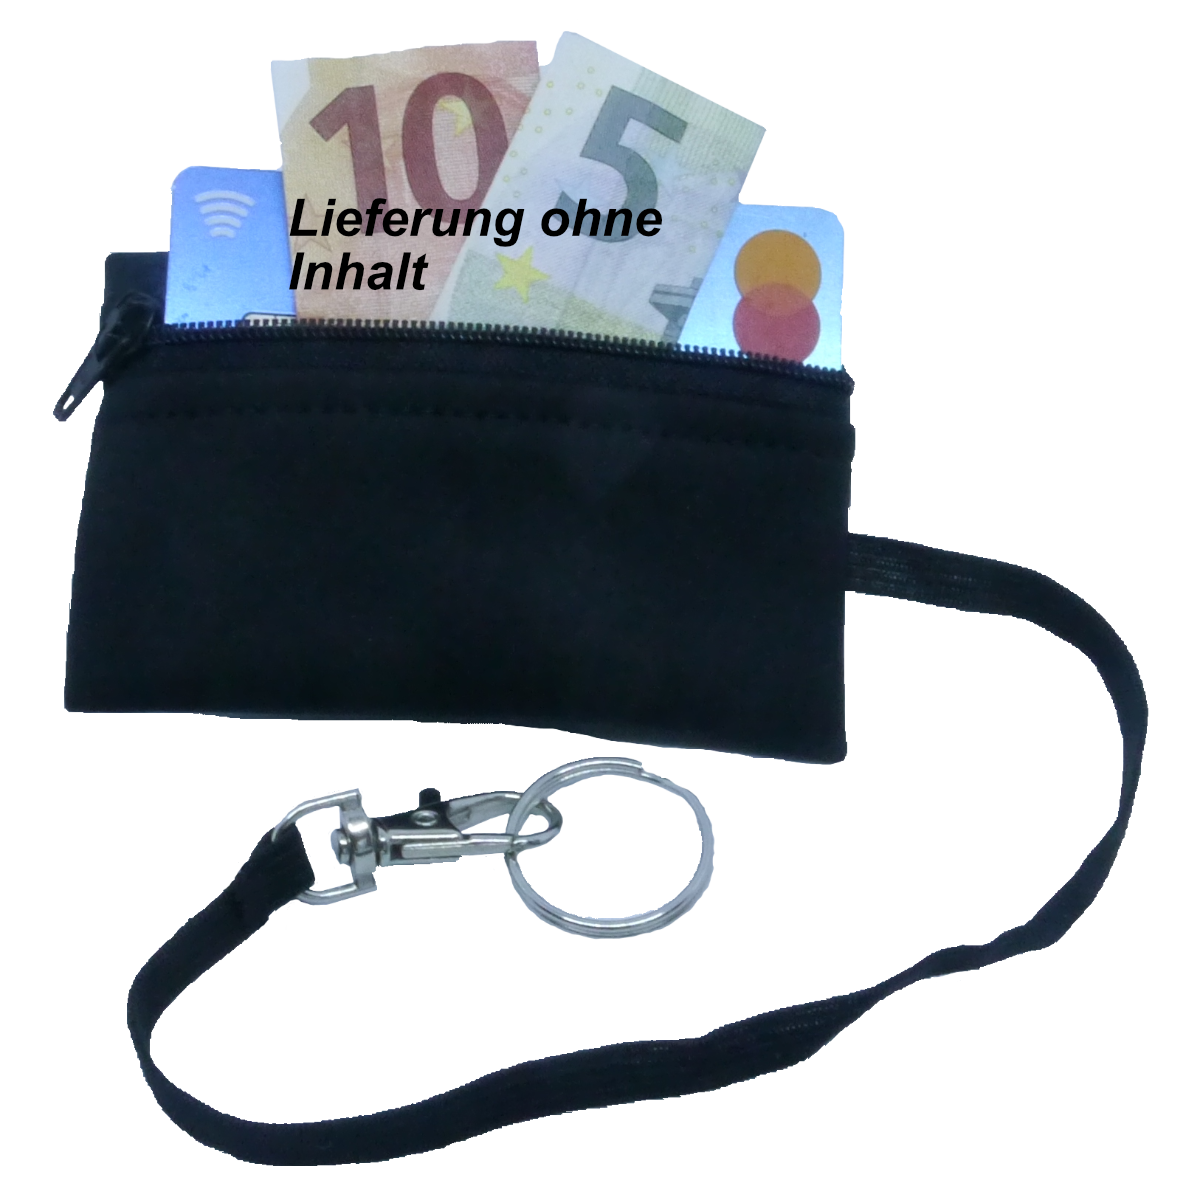 SKI-WALLET kleines Portemonnaie, Geldbörse, Brieftasche, Minibörse